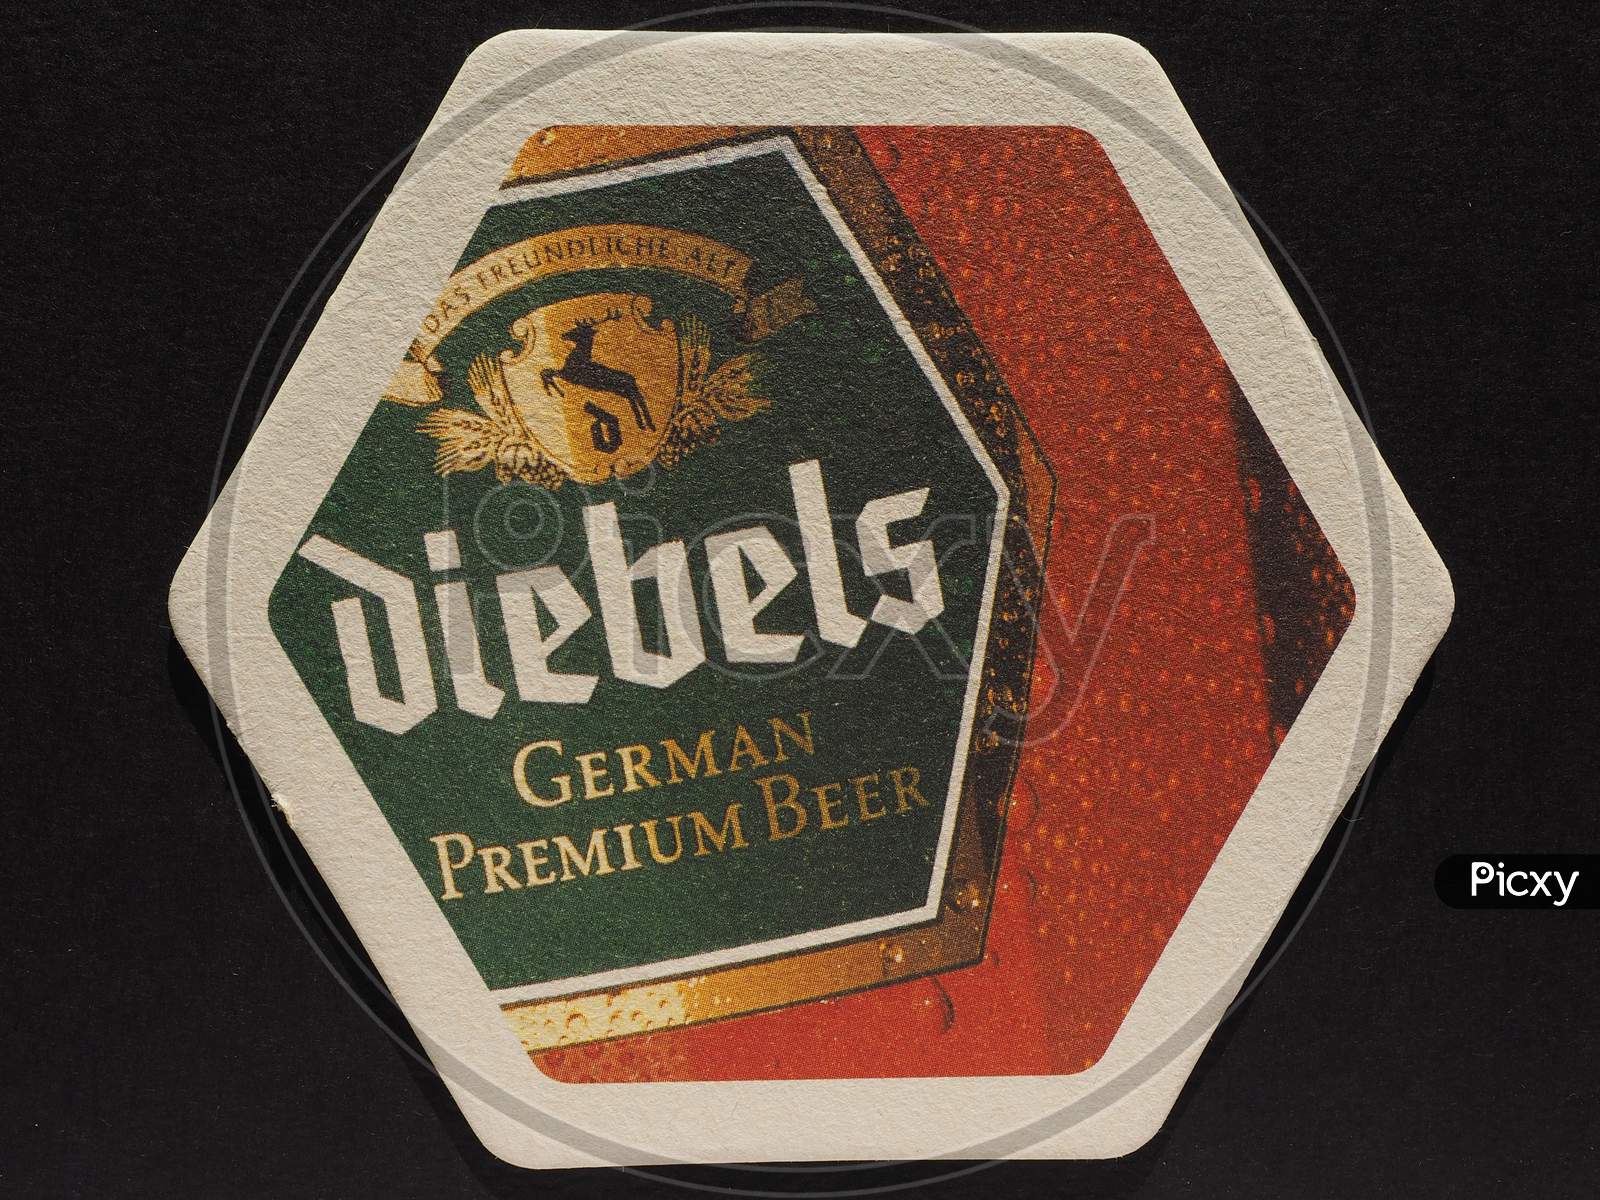 Berlin, Germany - December 11, 2014: Beermat Of German Beer Diebels